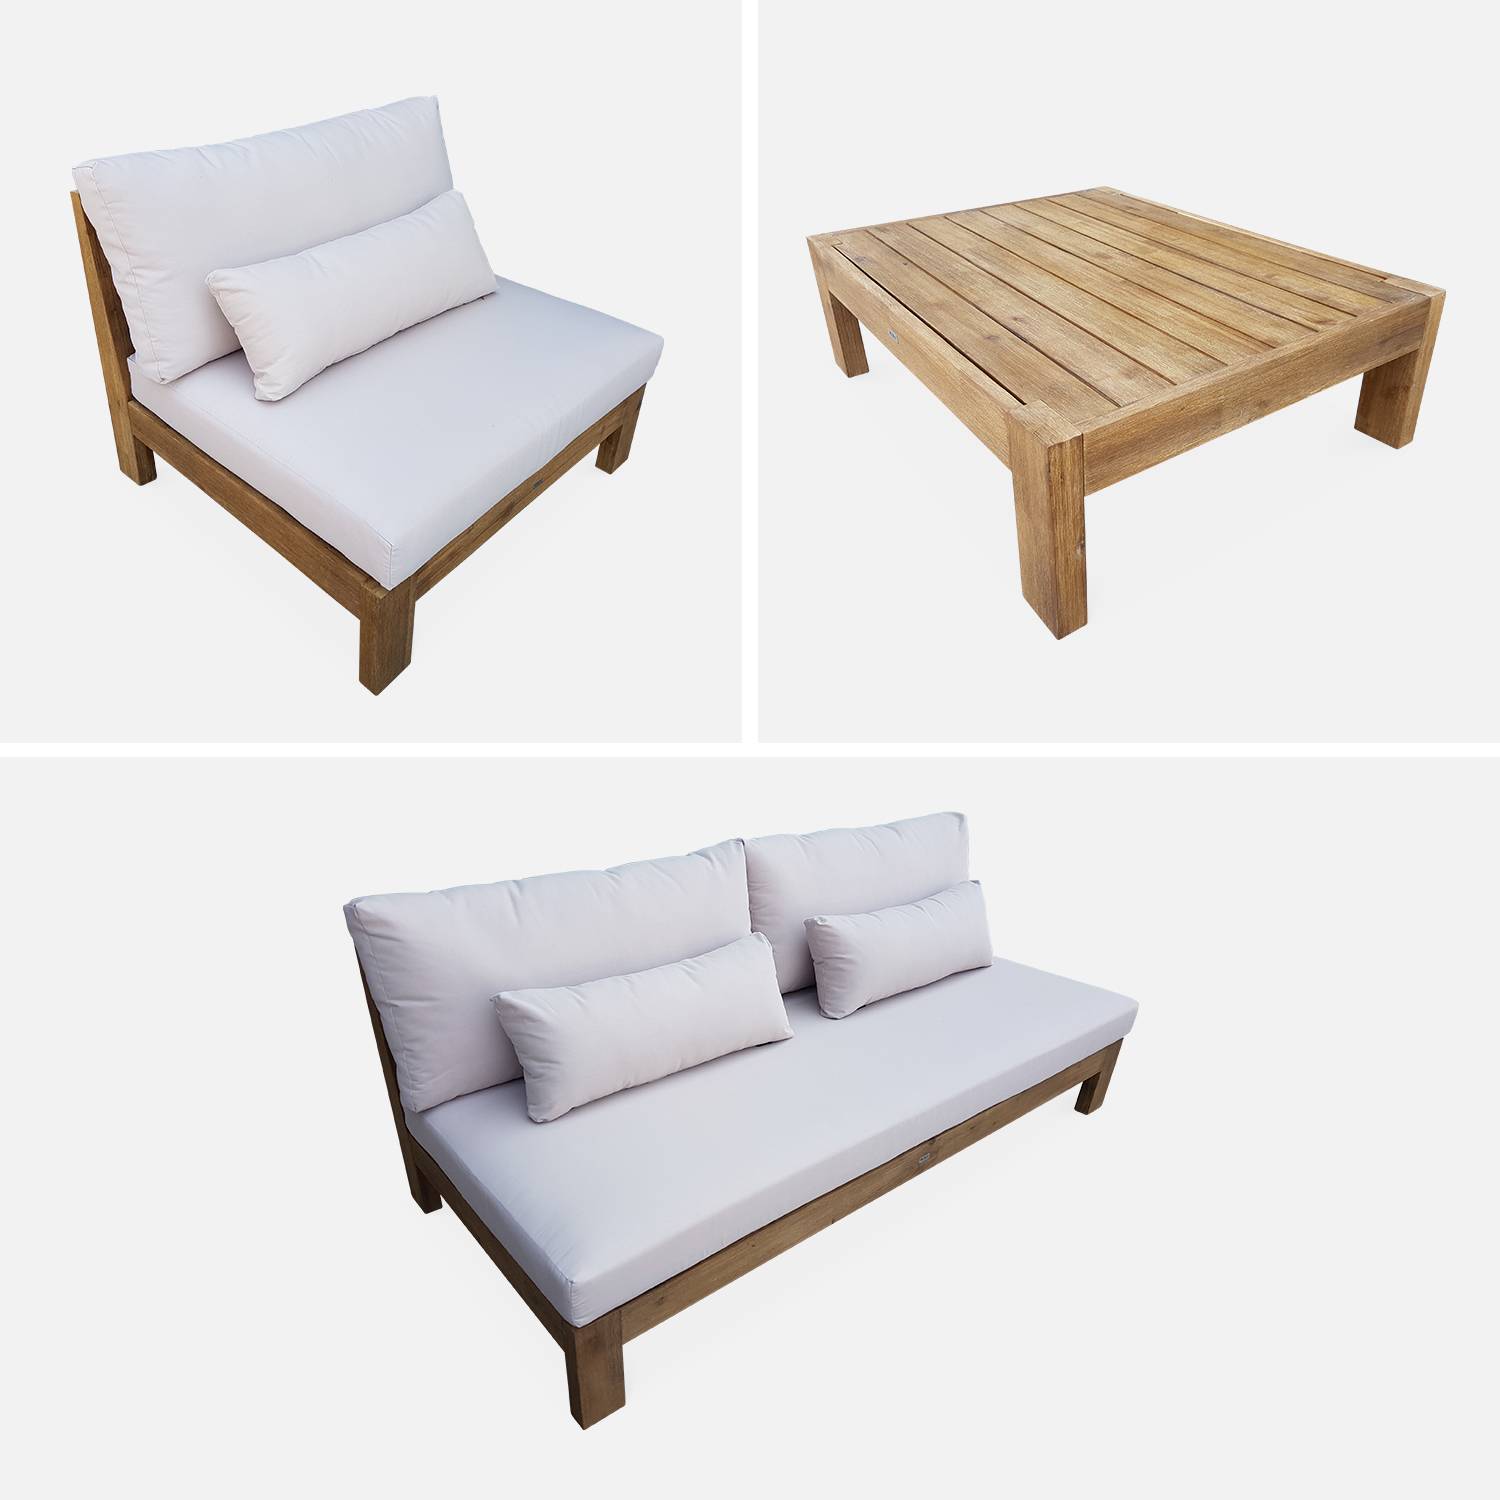  Conjunto de móveis de jardim XXL em madeira escovada, efeito branqueado - BAHIA - almofadas bege, ultra confortáveis, 5 a 7 lugares garden-lounge-xxl-wood-brush-white-bahia-cushions-beige Photo8